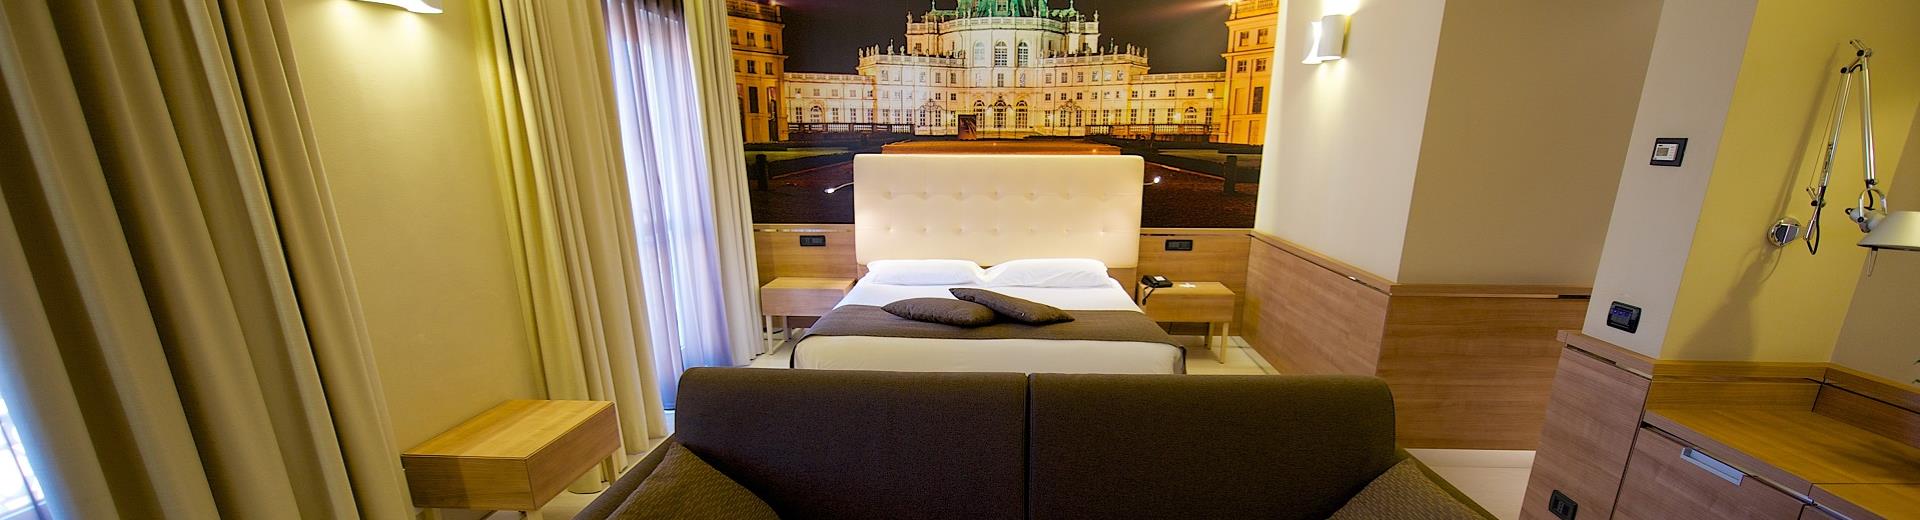 Comfort ed eleganza nelle Family Room del nostro hotel 3 stelle a Torino